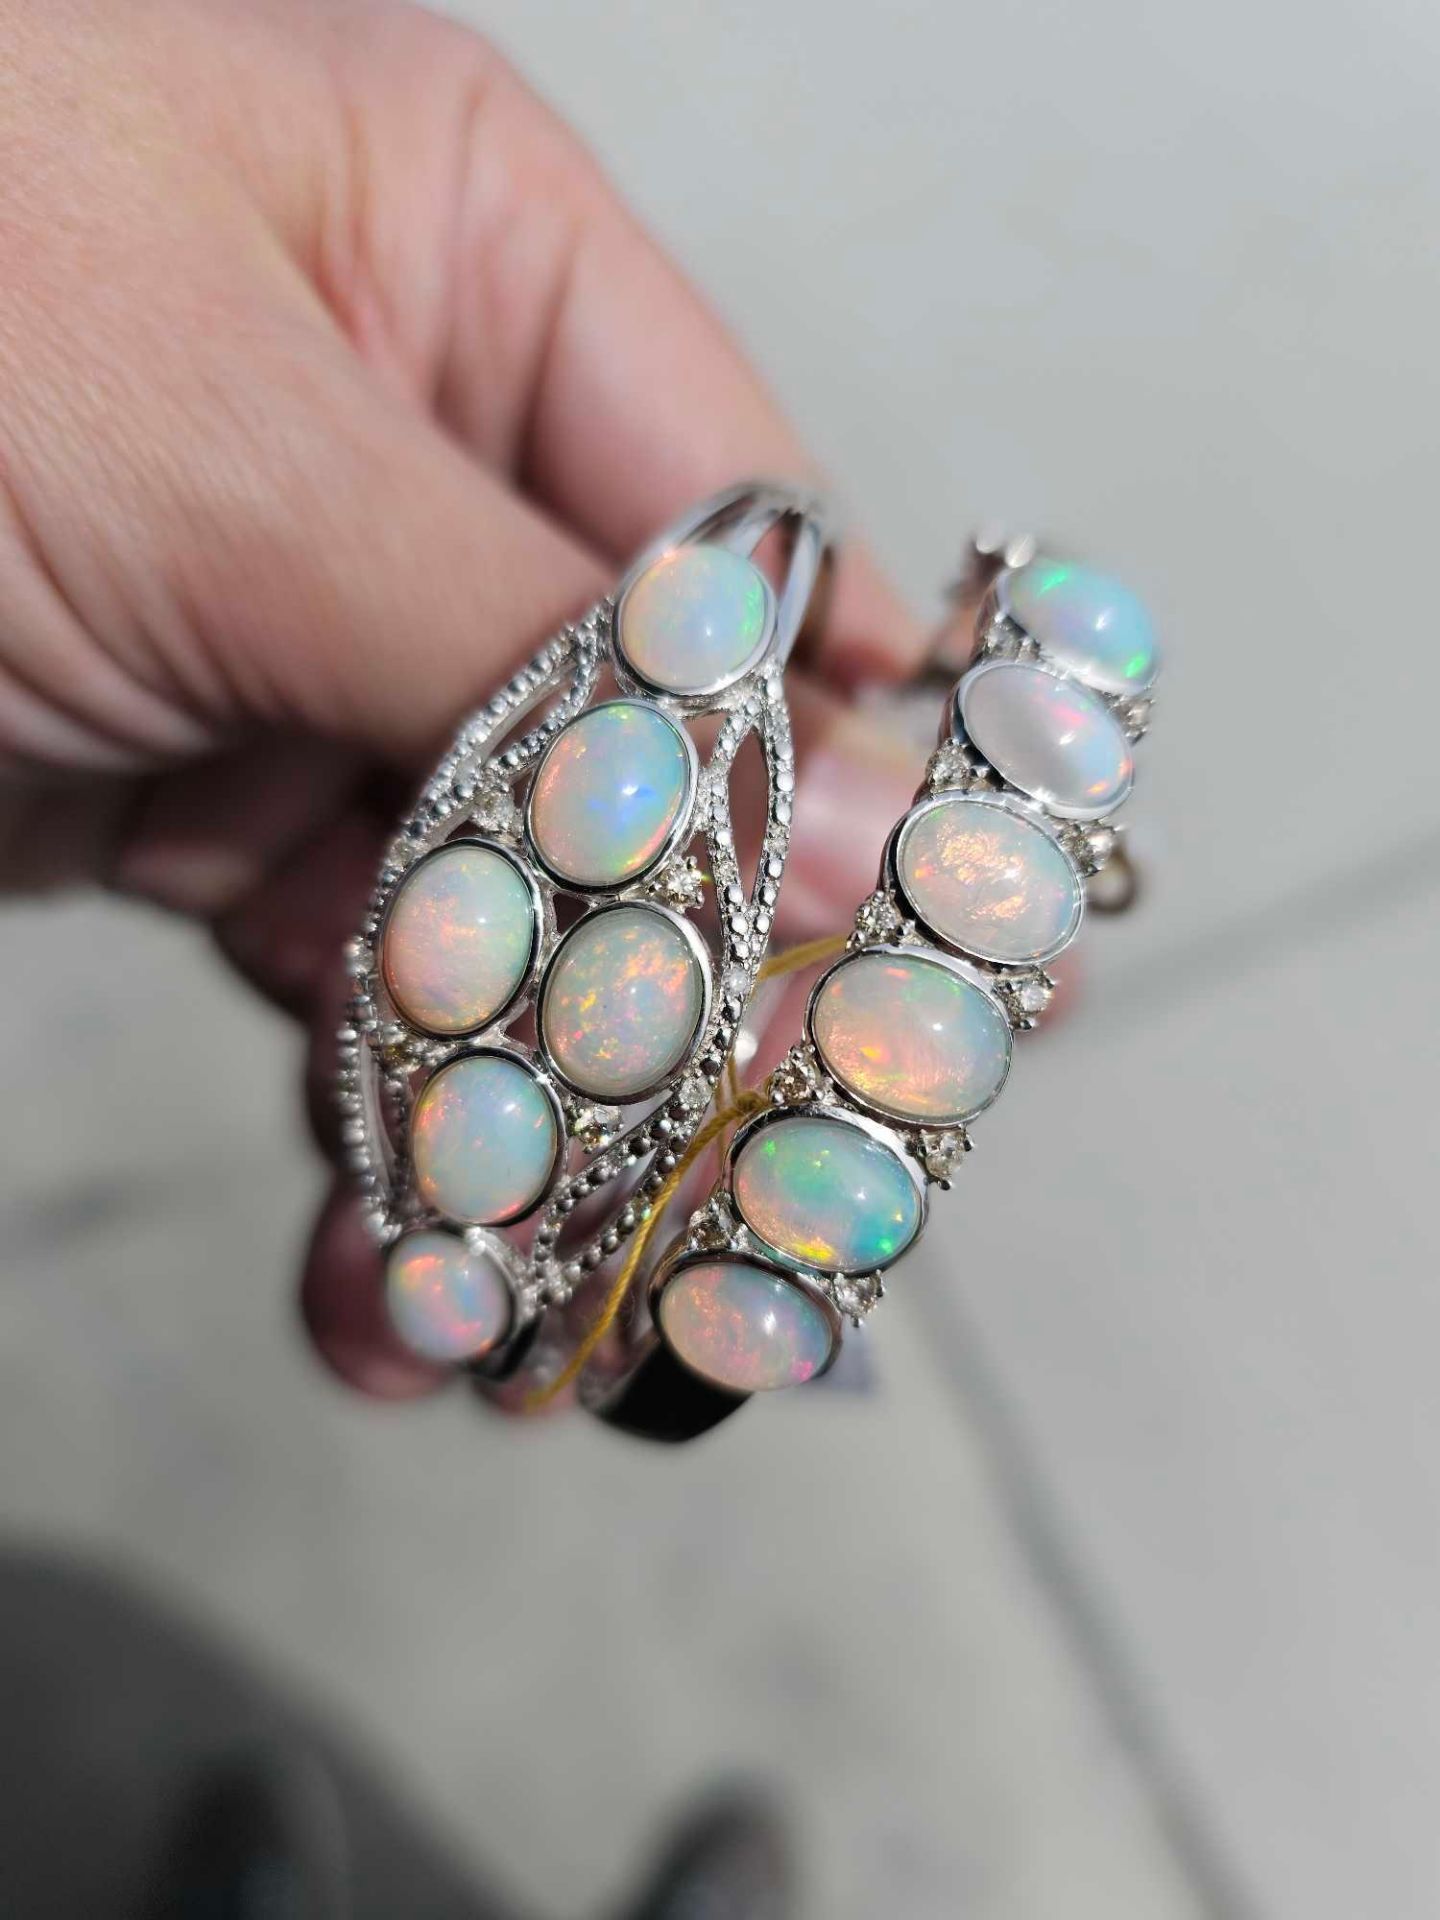 2 opal bracelets - Image 3 of 7